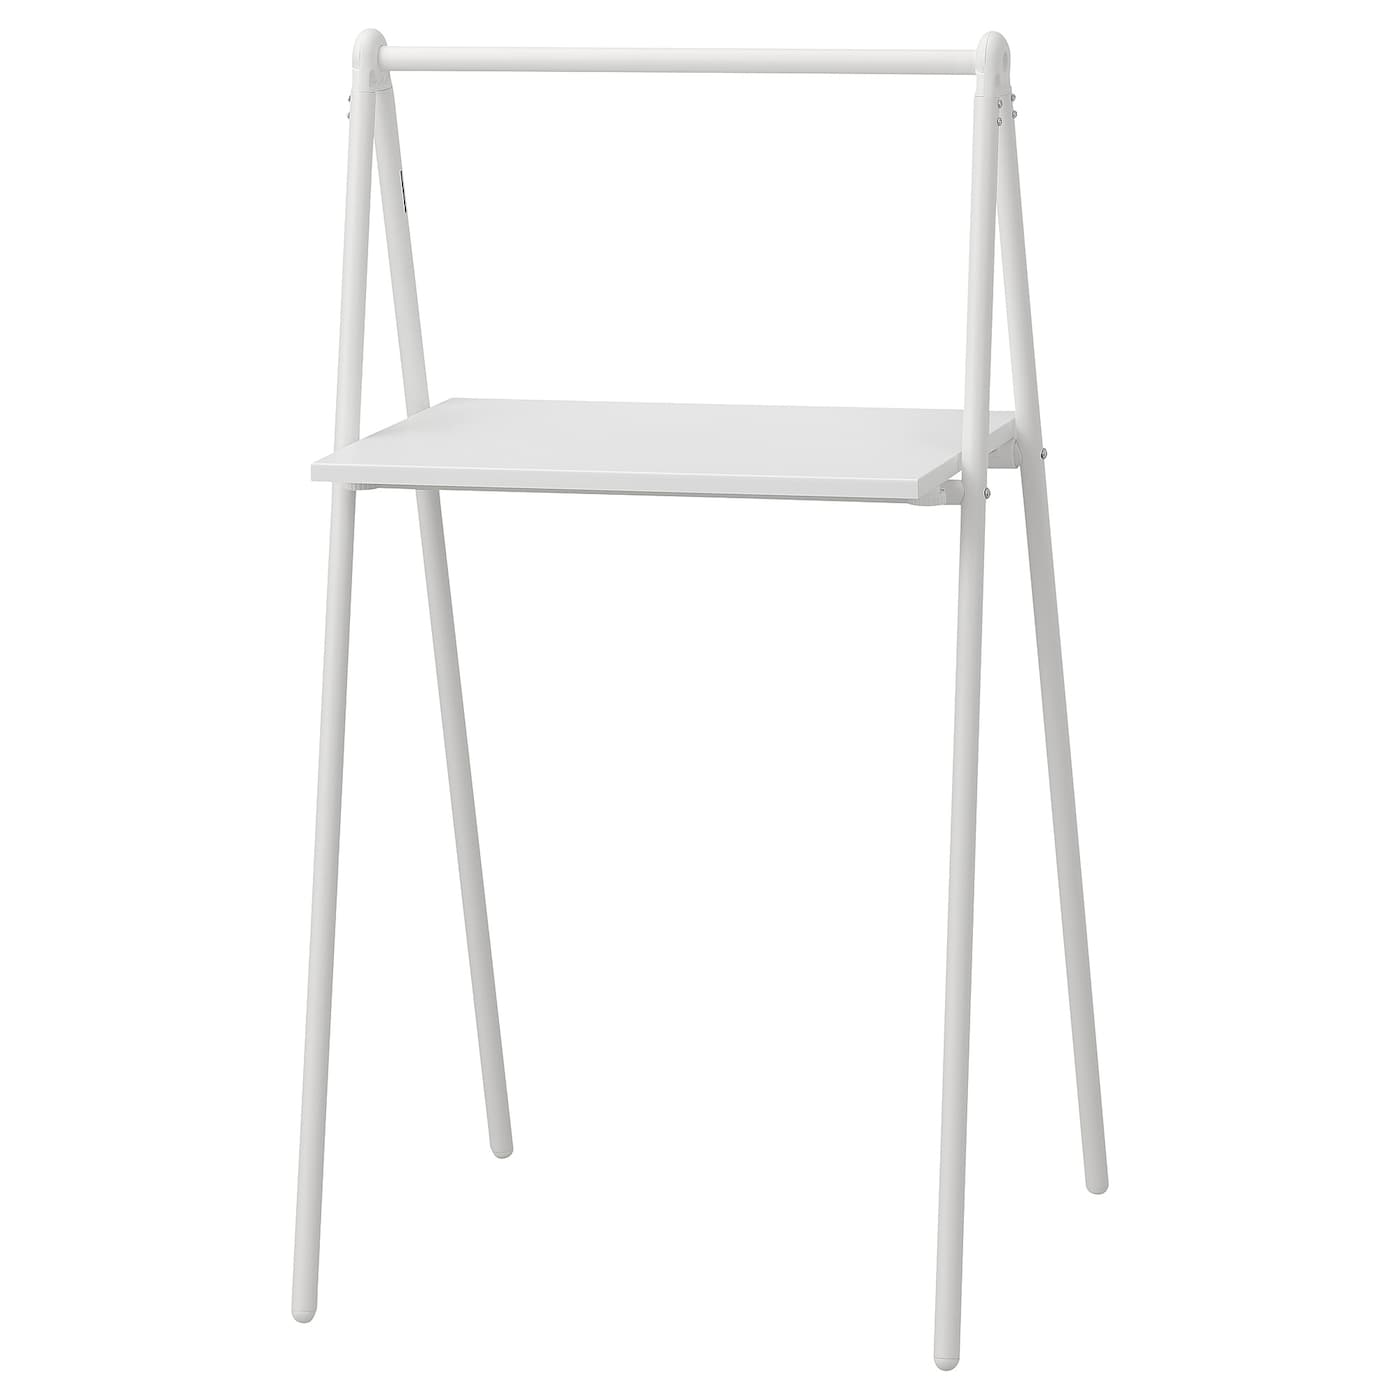 BJÖRKÅSEN folding table white - IKEA